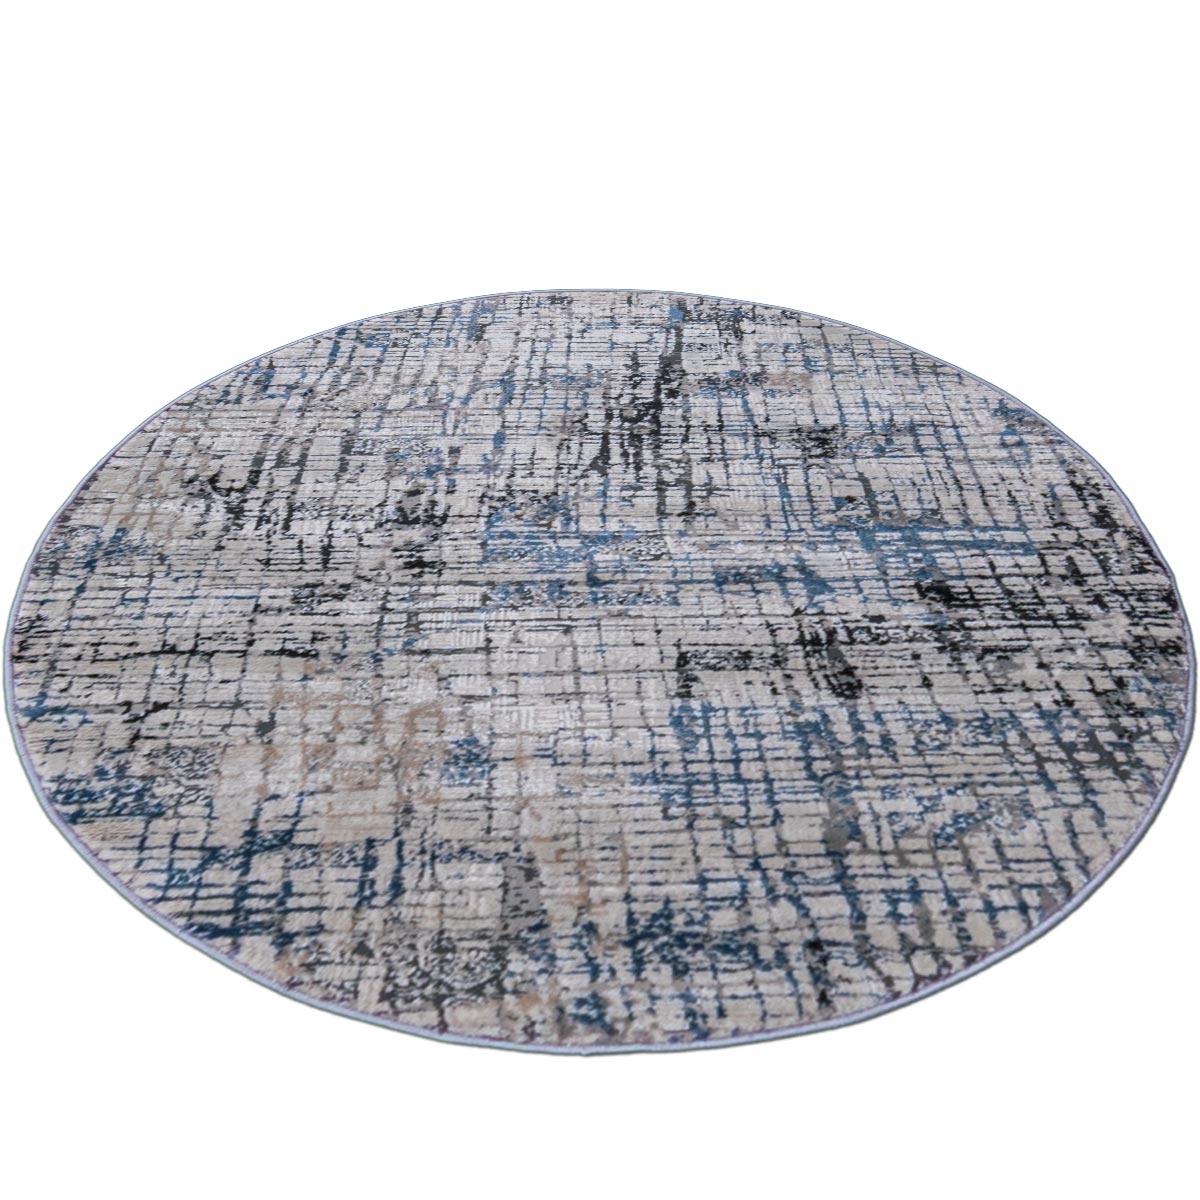 שטיח טורונטו 20 אפור/אפור כהה/כחול עגול | השטיח האדום